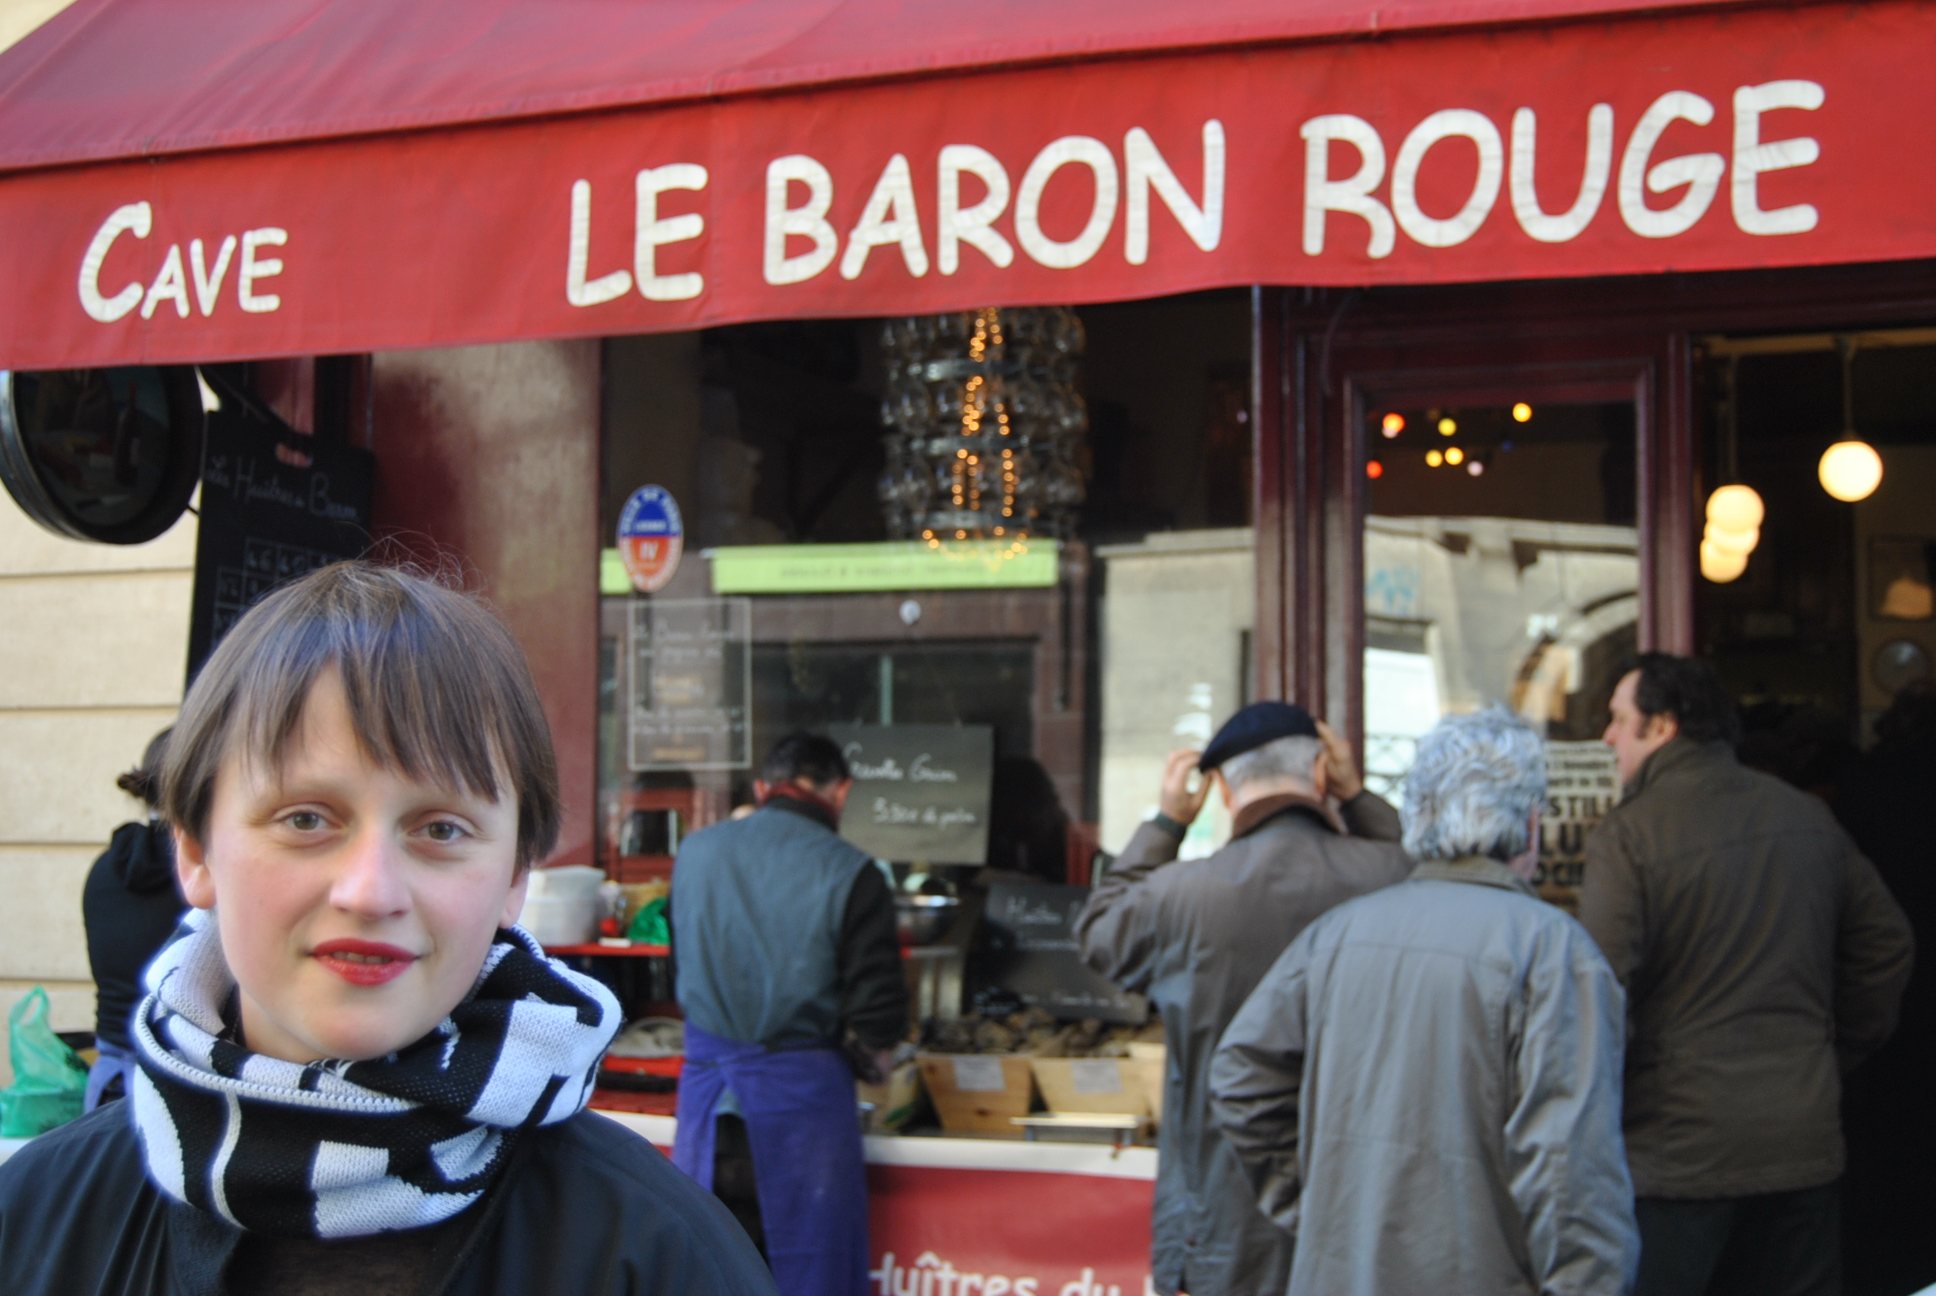 le baron rouge paris | My parisian life1936 x 1296